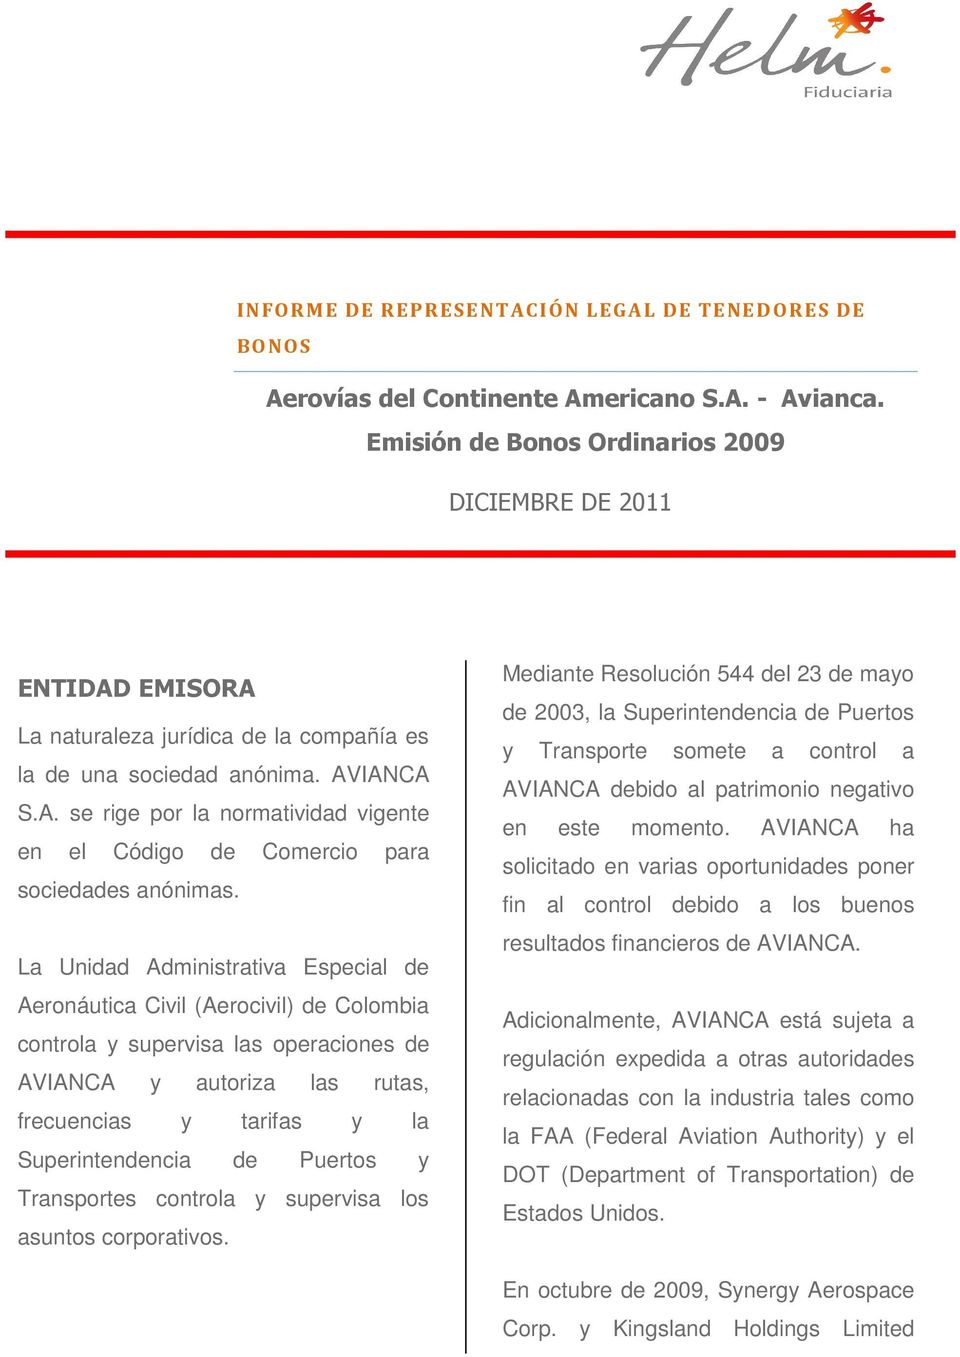 La Unidad Administrativa Especial de Aeronáutica Civil (Aerocivil) de Colombia controla y supervisa las operaciones de AVIANCA y autoriza las rutas, frecuencias y tarifas y la Superintendencia de